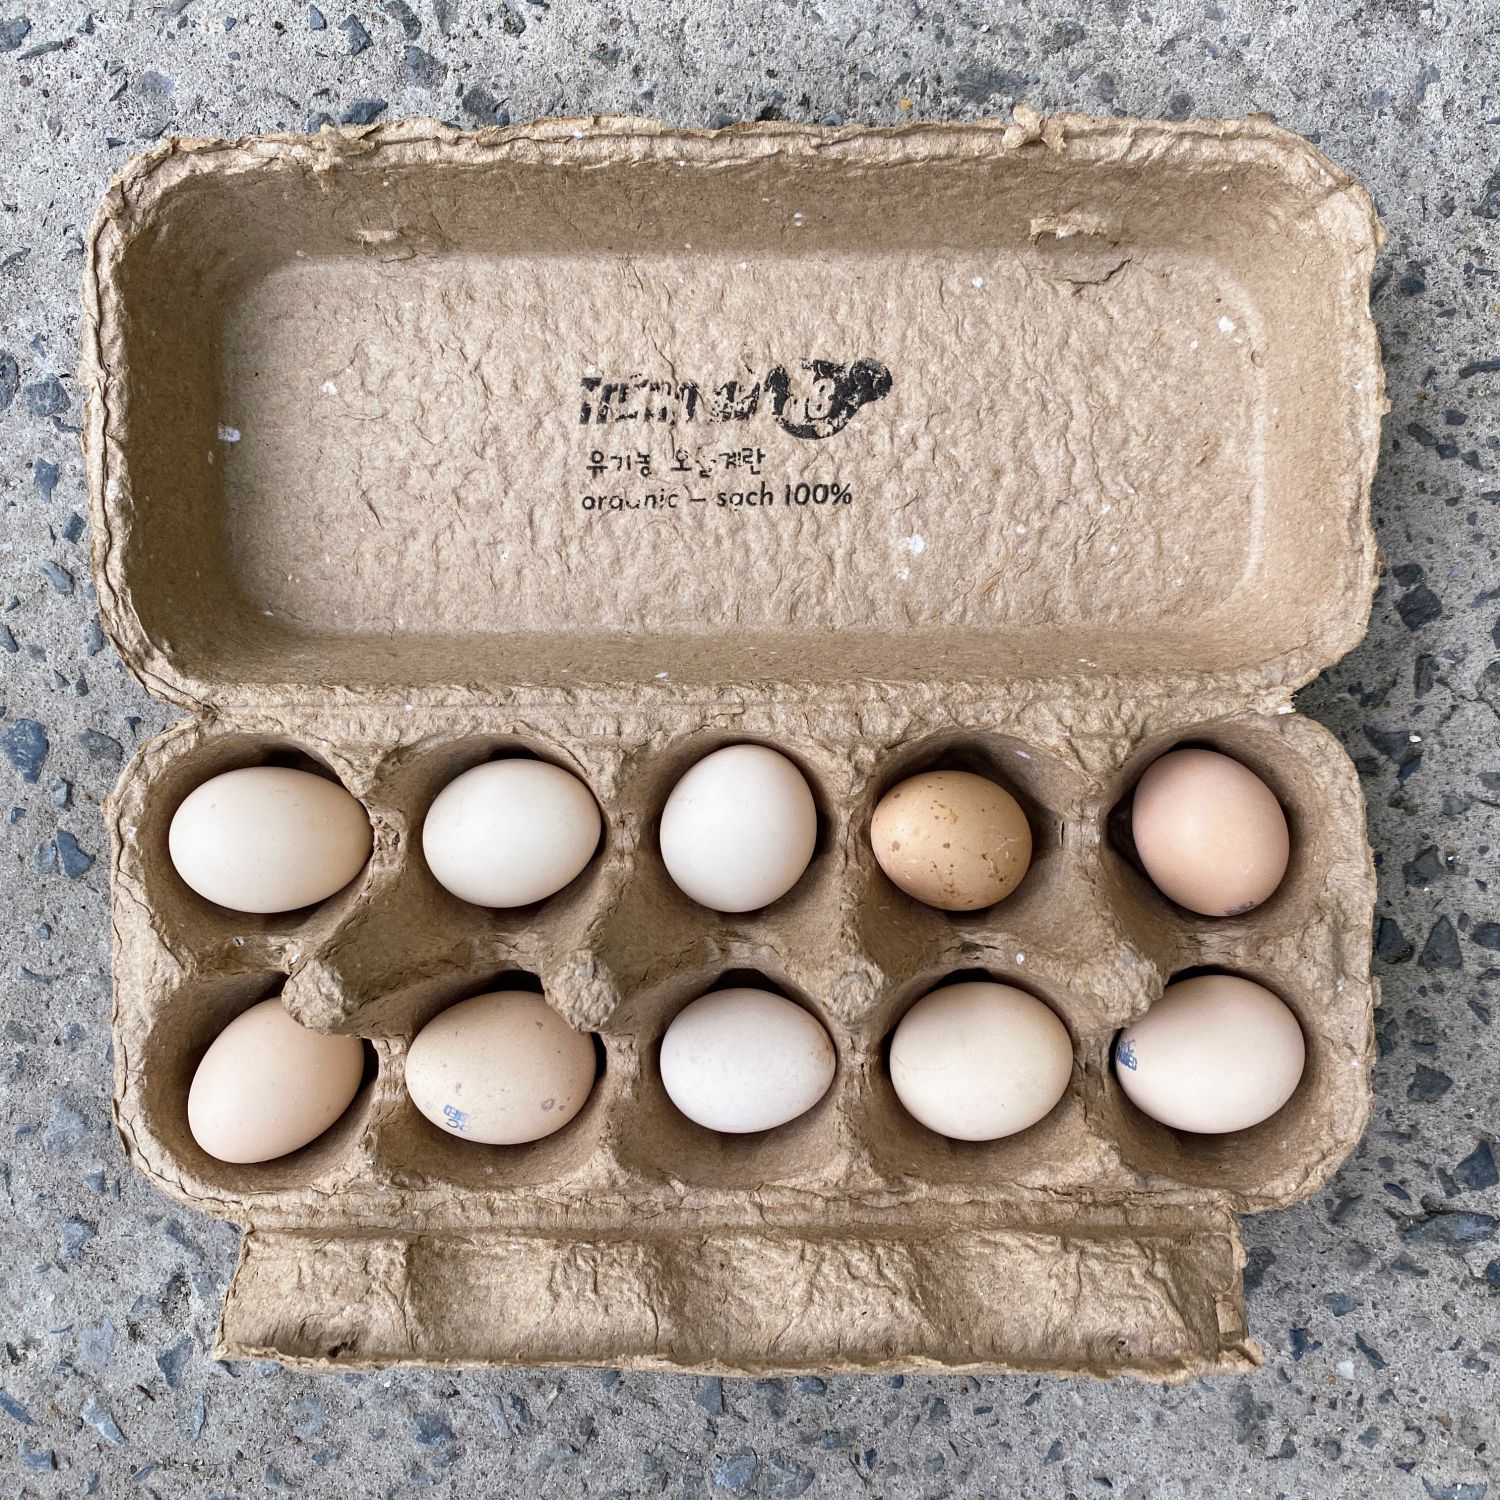 Nghiên cứu chi tiết về nguyên nhân gây ra màu của vỏ trứng ở giống gà nói riêng và loài chim nói chung